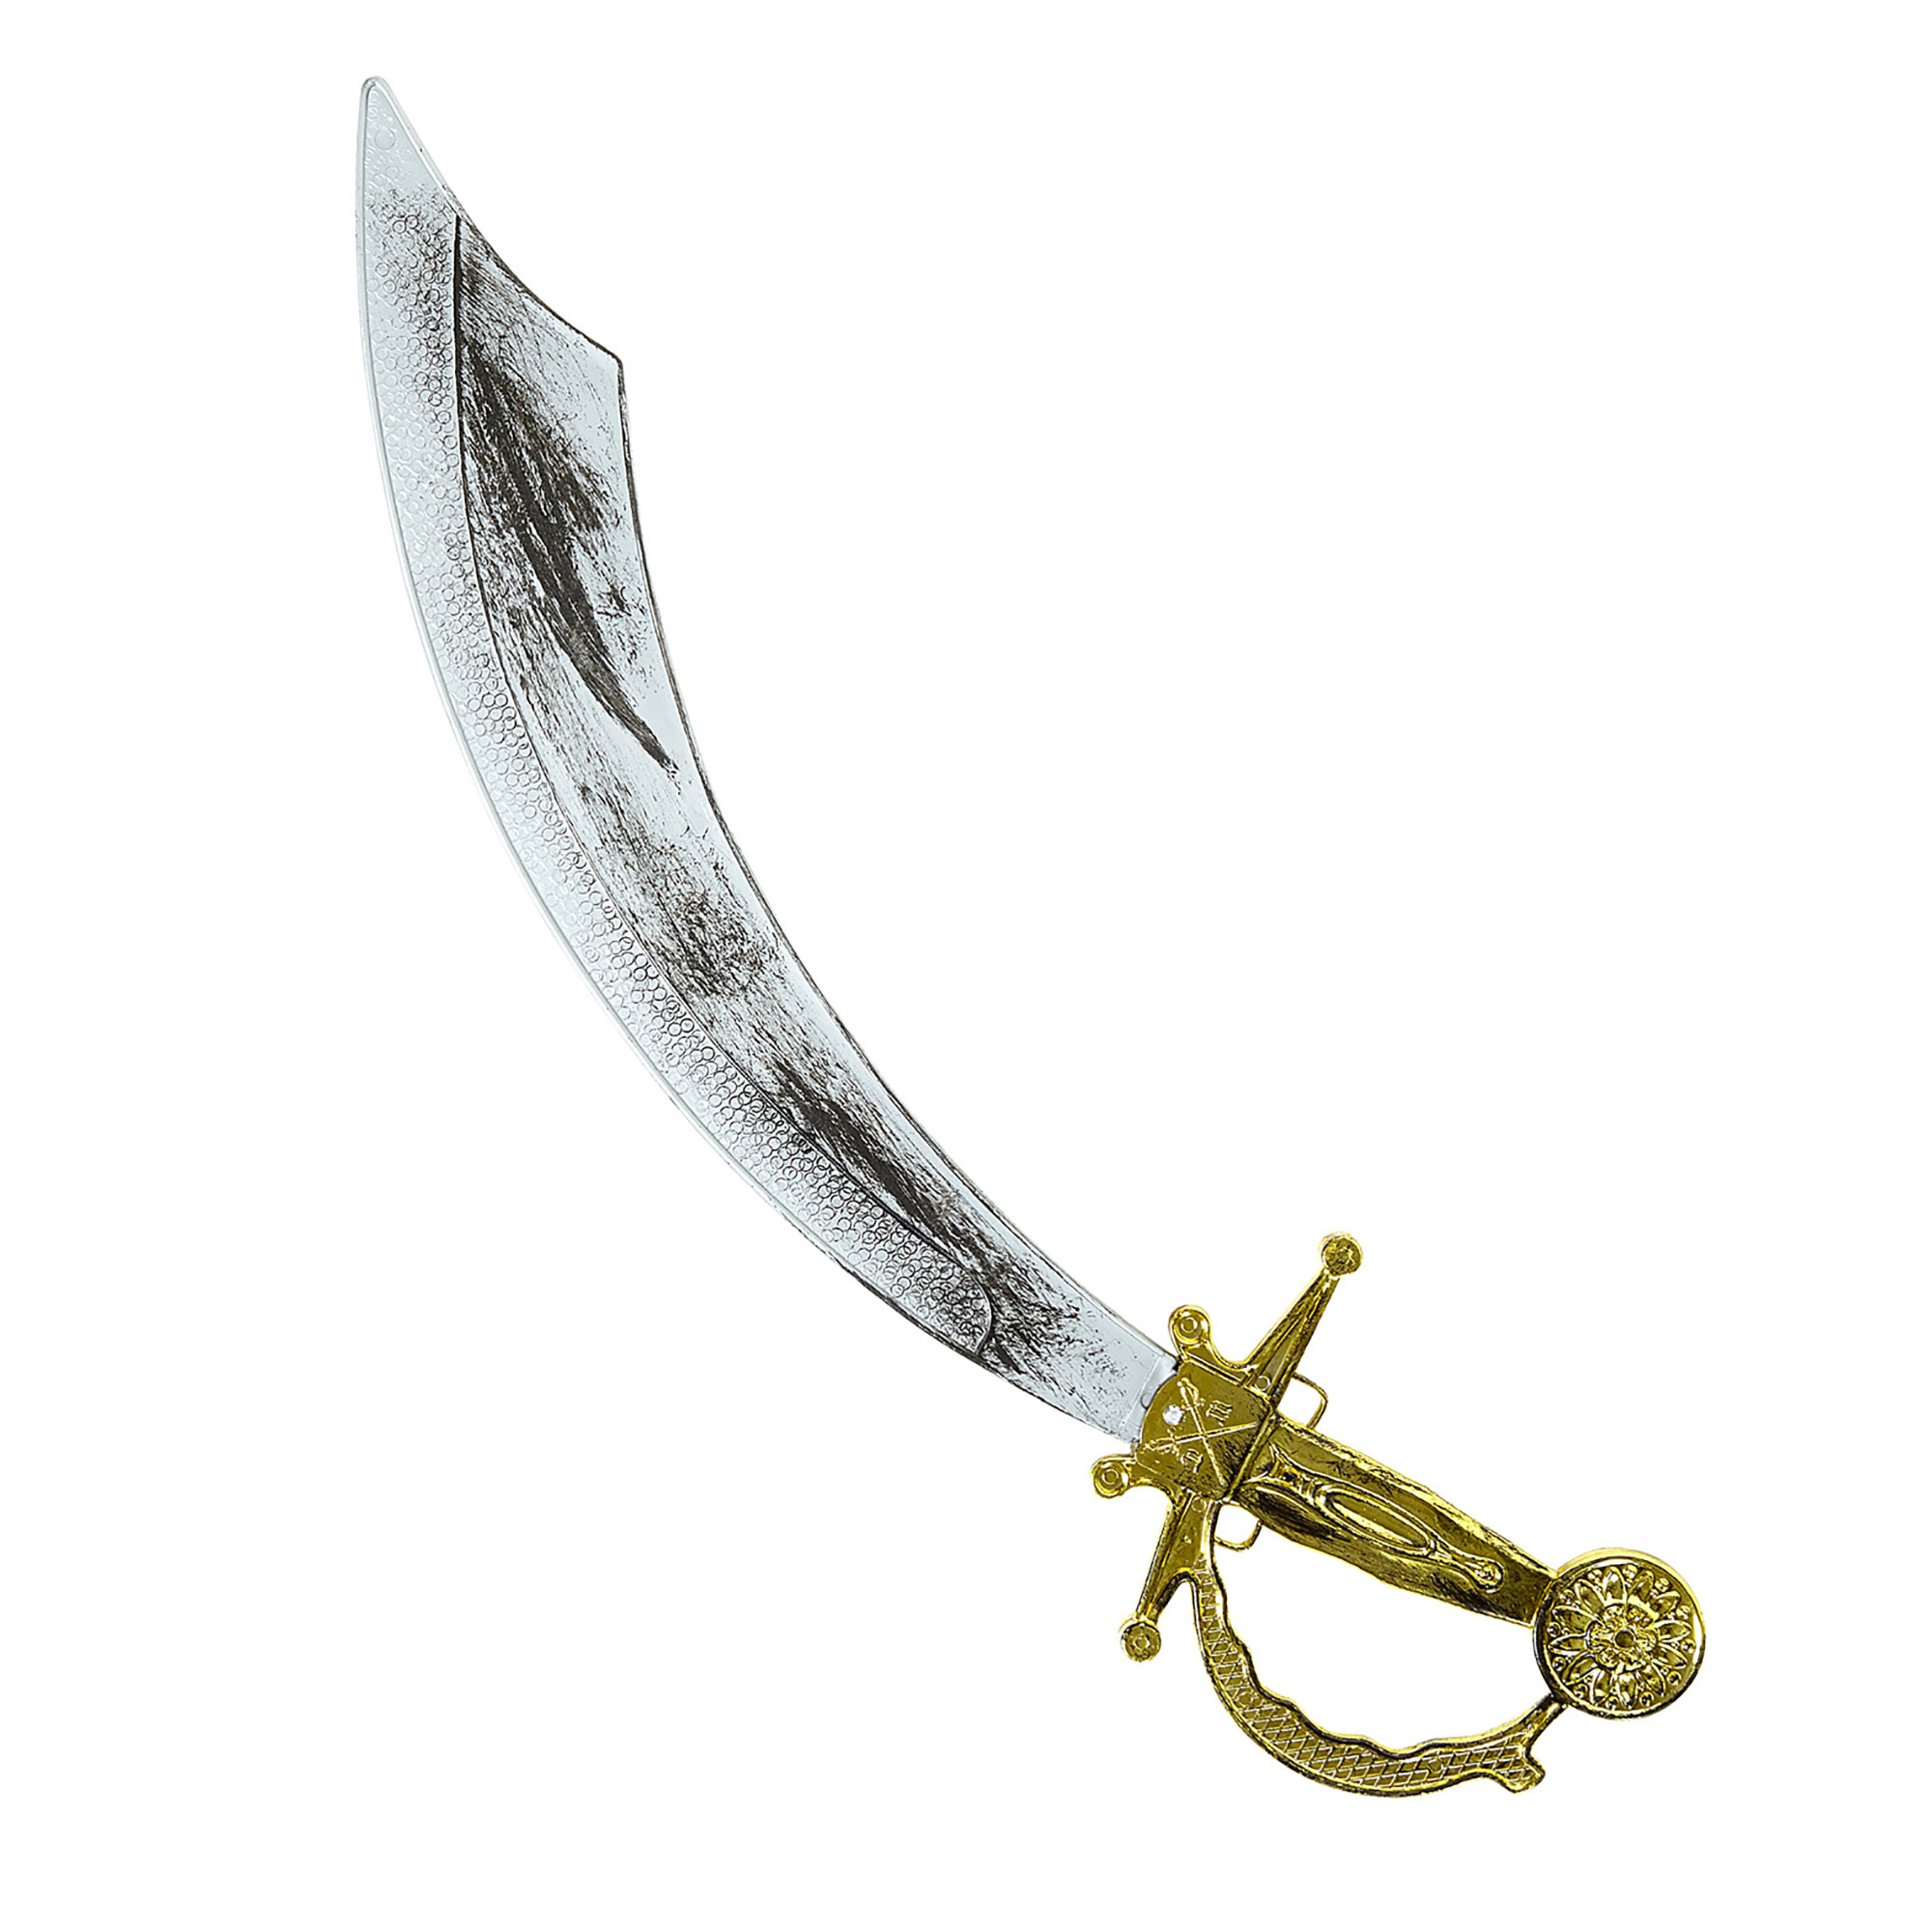 Oudheid piraten zwaard